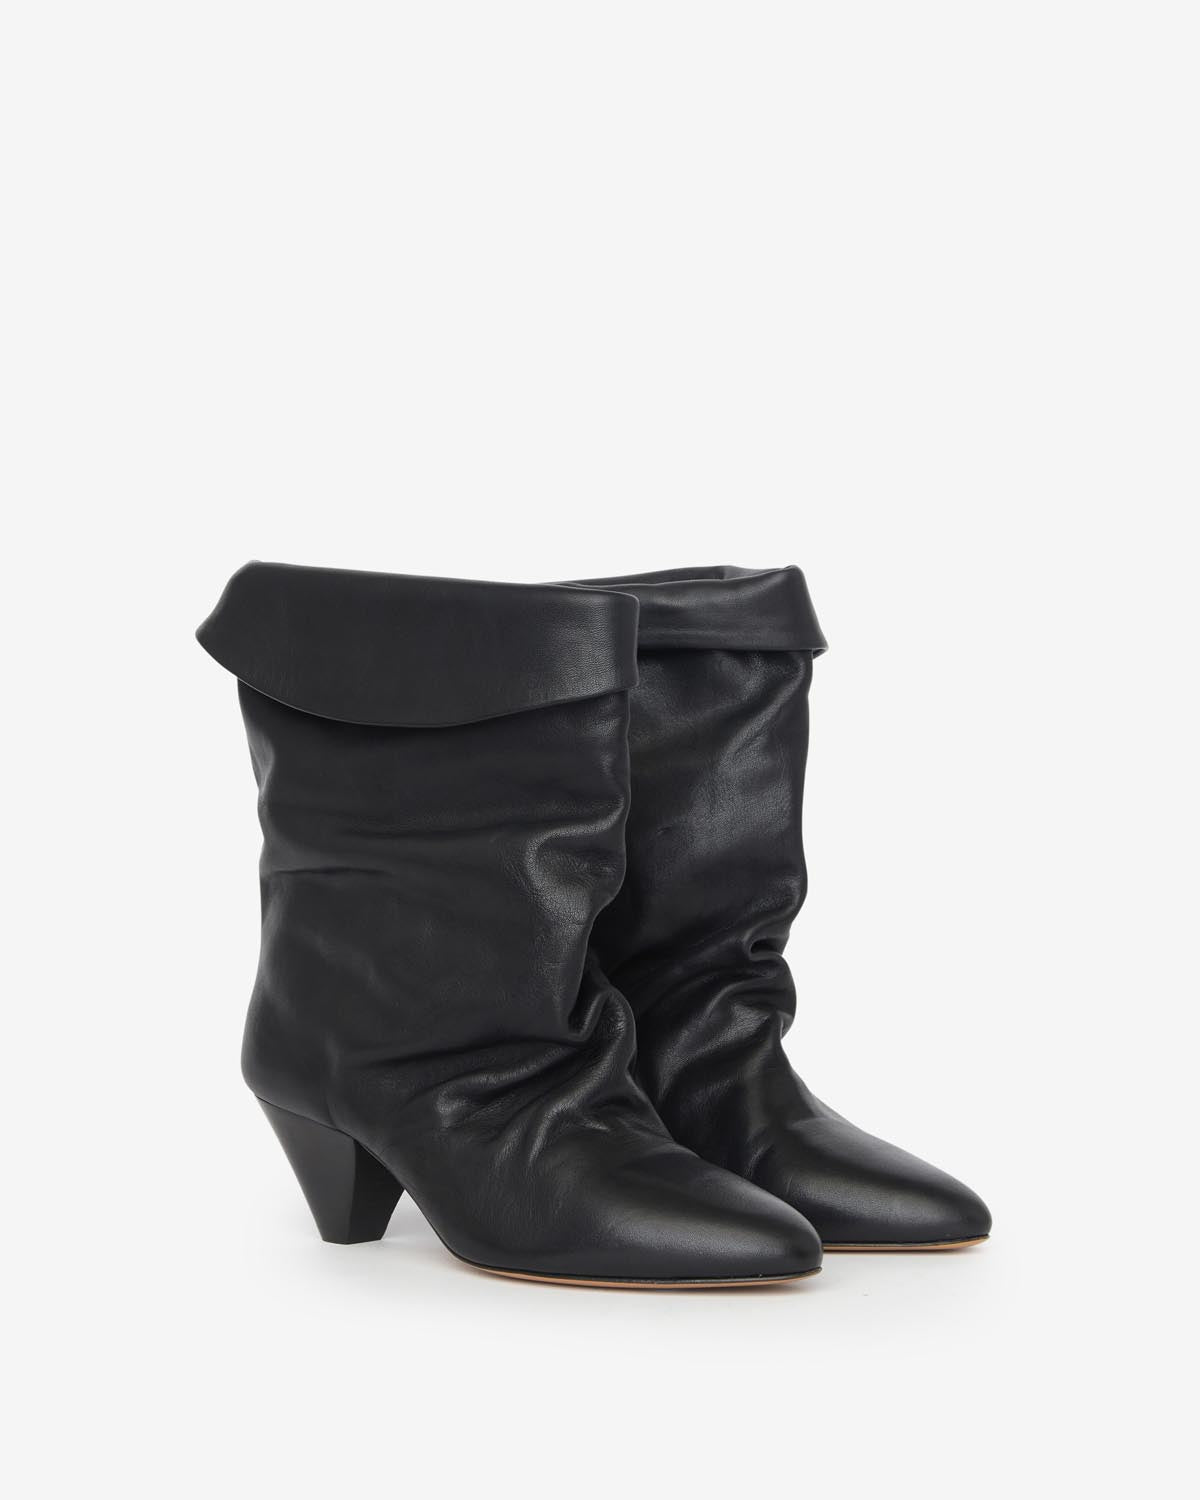 Ryska boots Woman Black 4